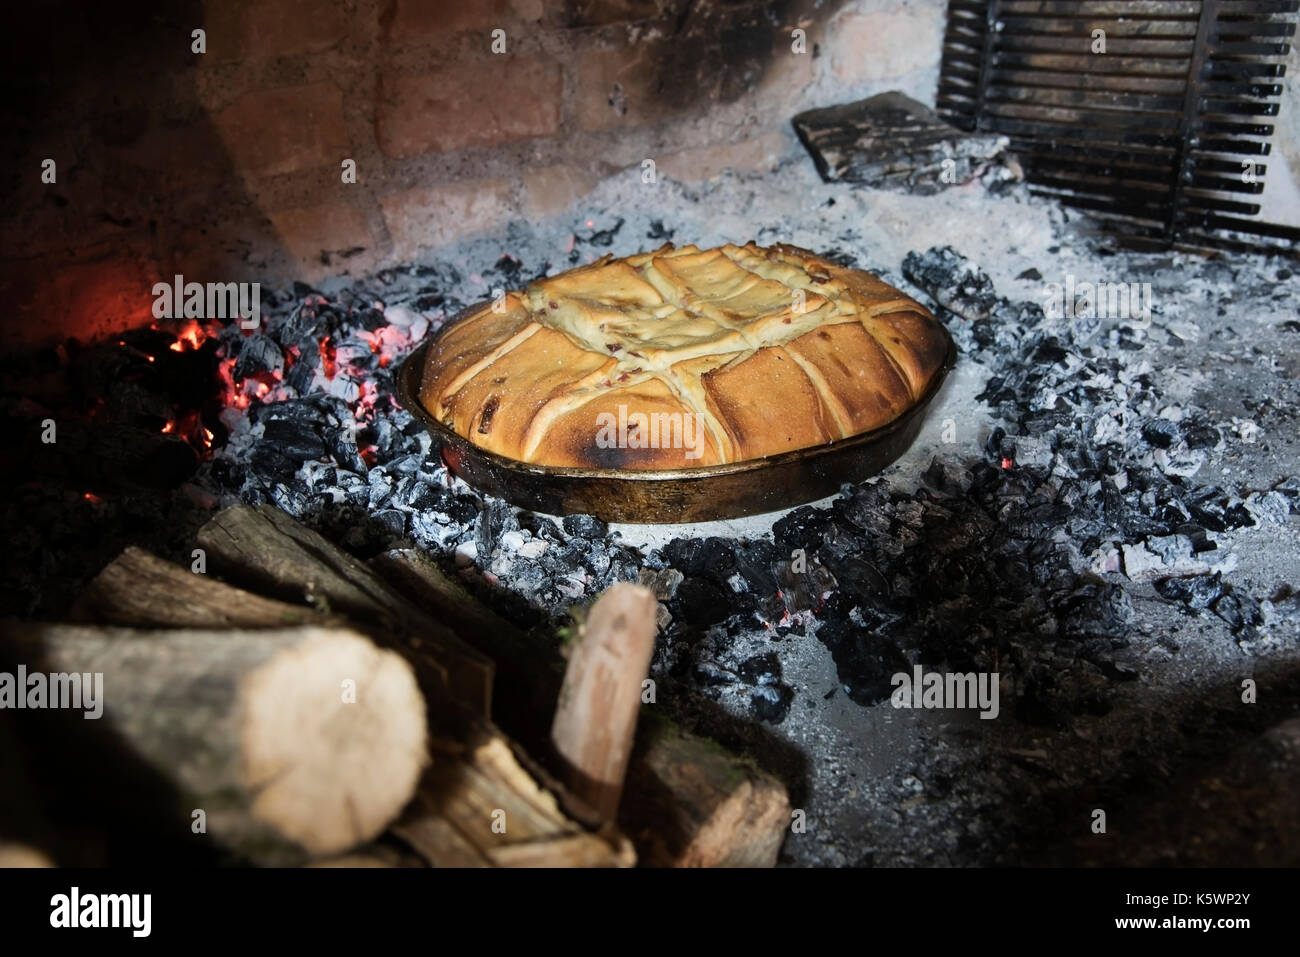 Frisch Brot gebacken in einem Feuer Brot Backofen Umgeben von brennenden Feuerzeug Stockfoto